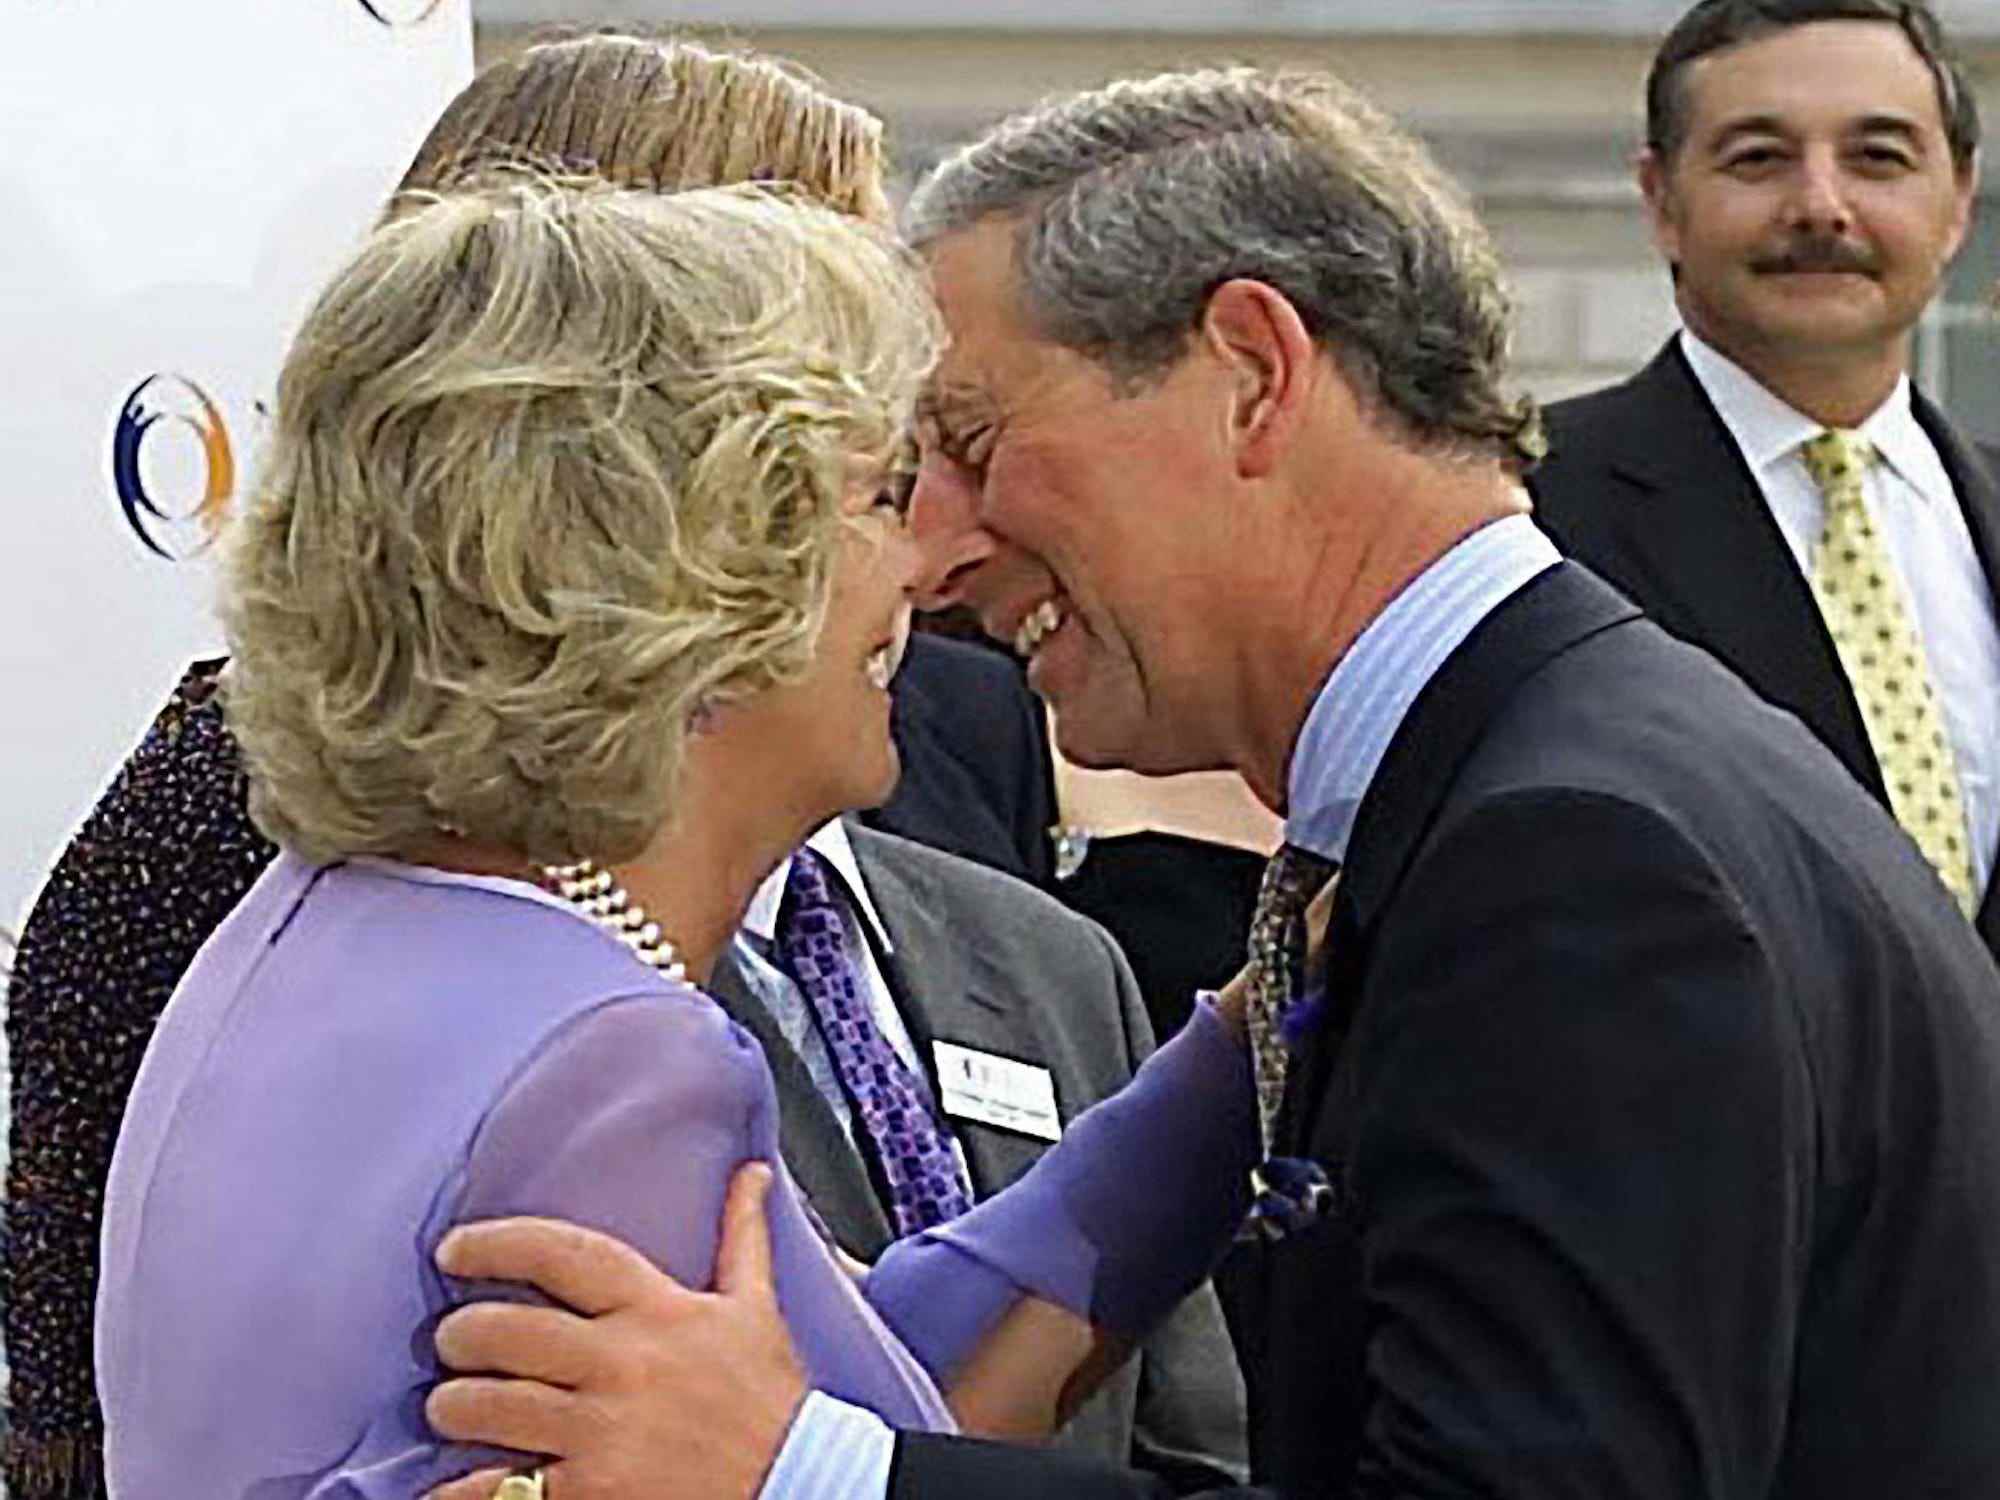 König Charles III beugt sich vor, um Camilla, Queen Consort im Jahr 2001, zu küssen.